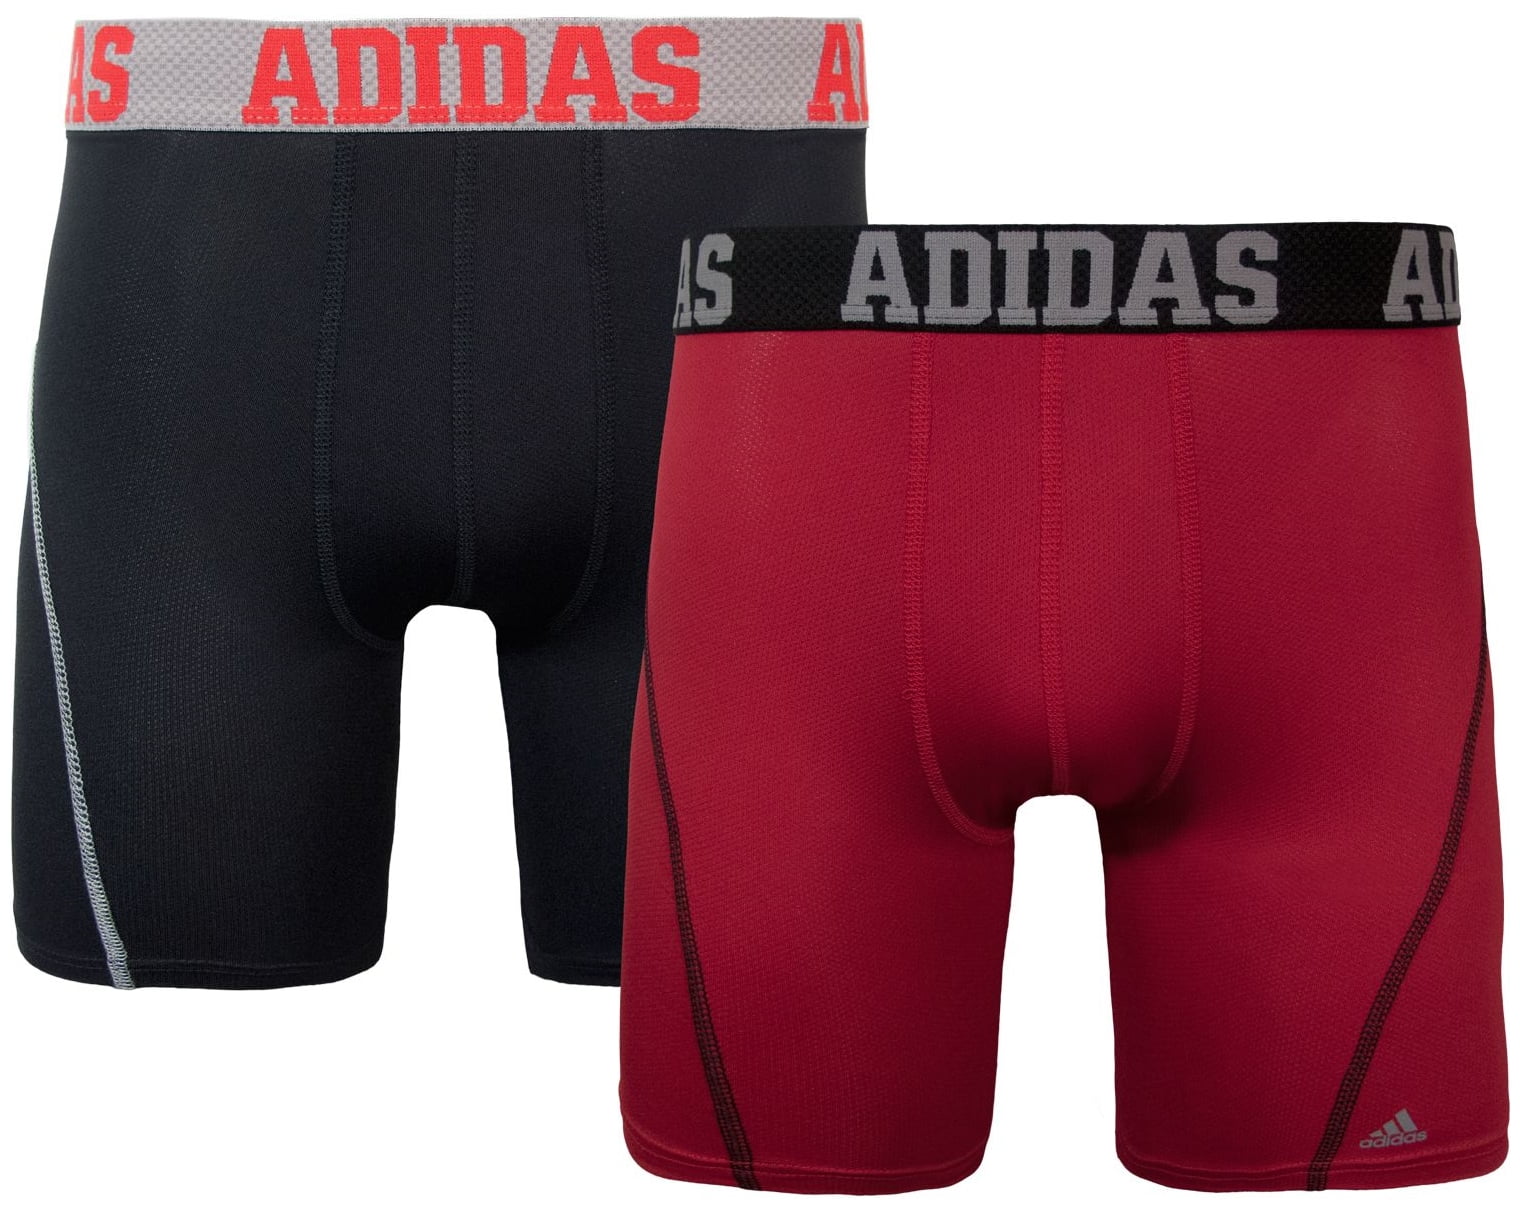 adidas men's climacool 7 midway briefs underwear